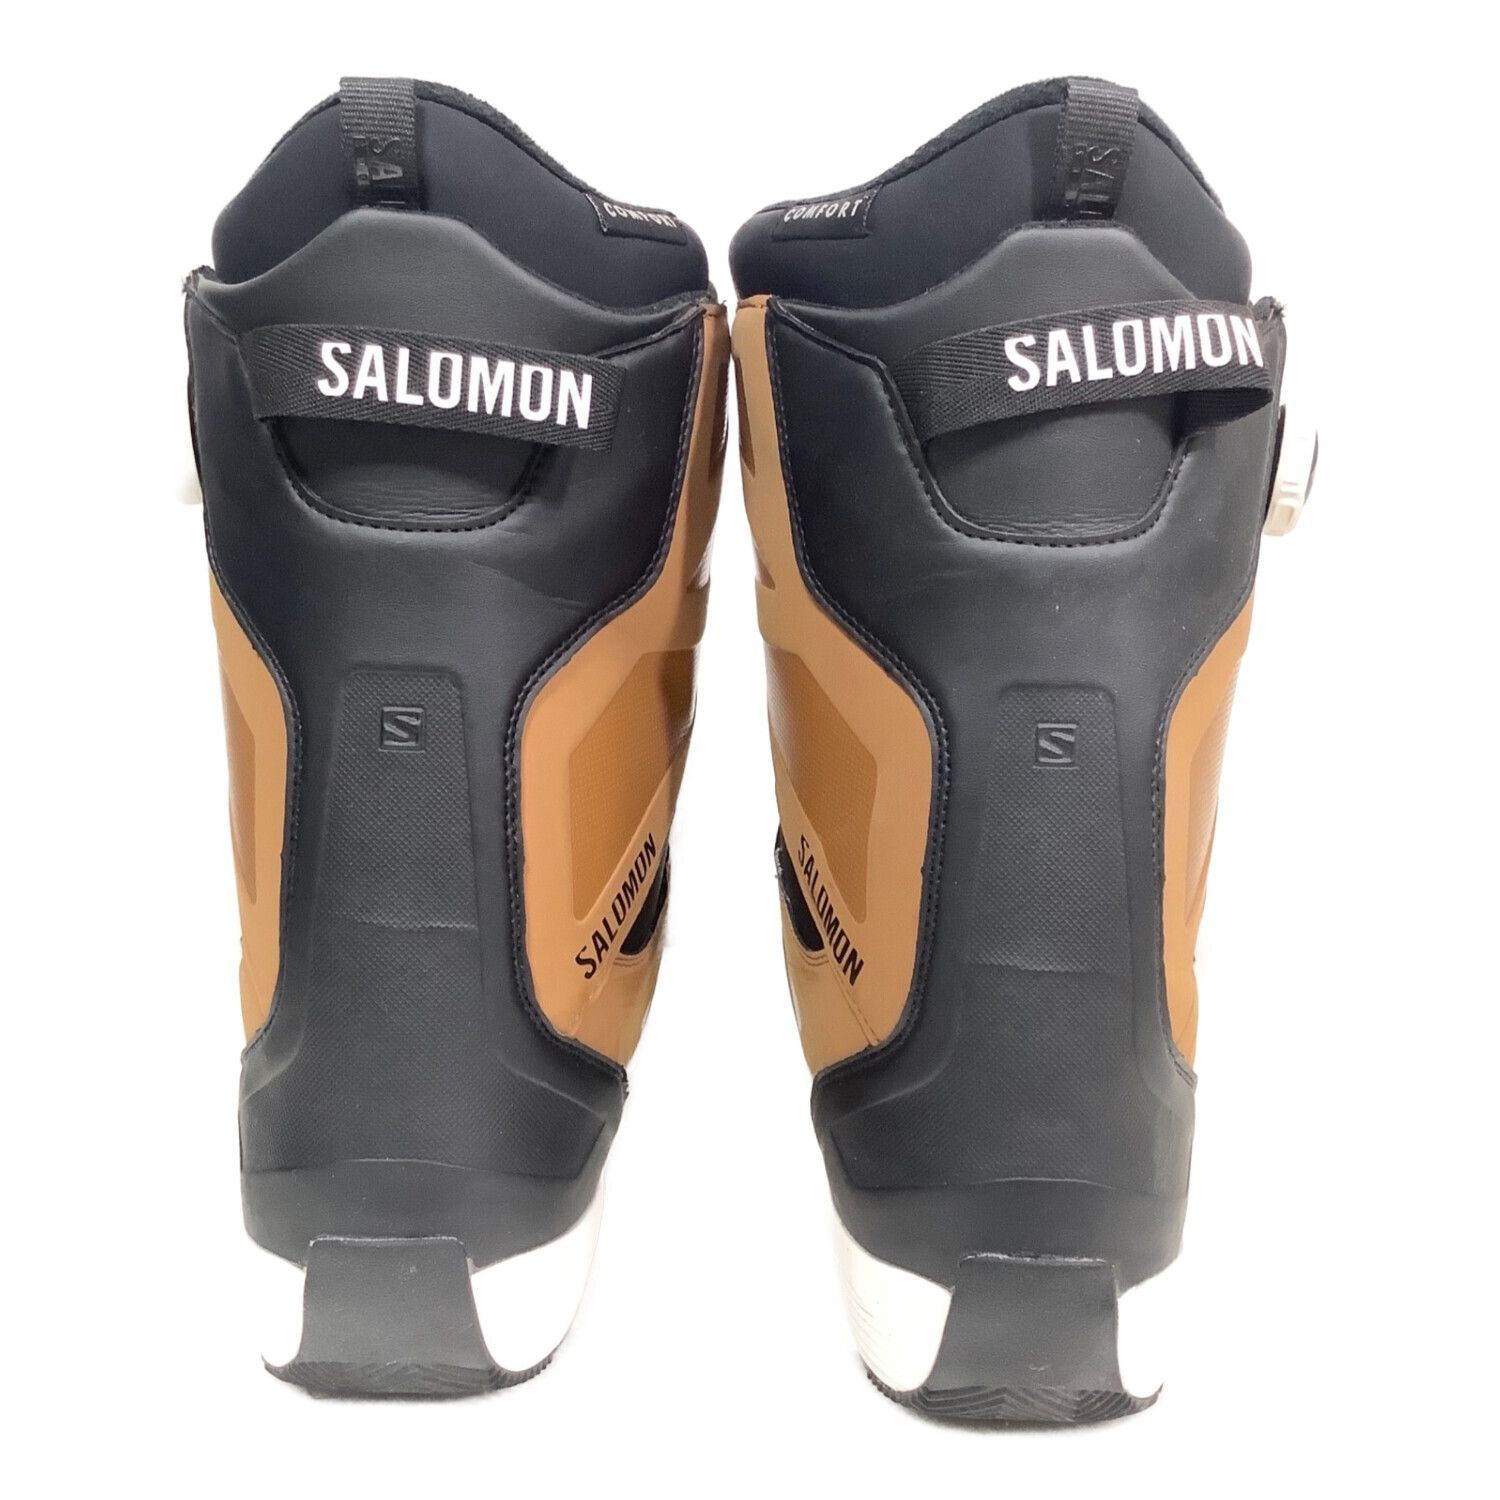 SALOMON (サロモン) スノーボードブーツ メンズ SIZE 27cm 